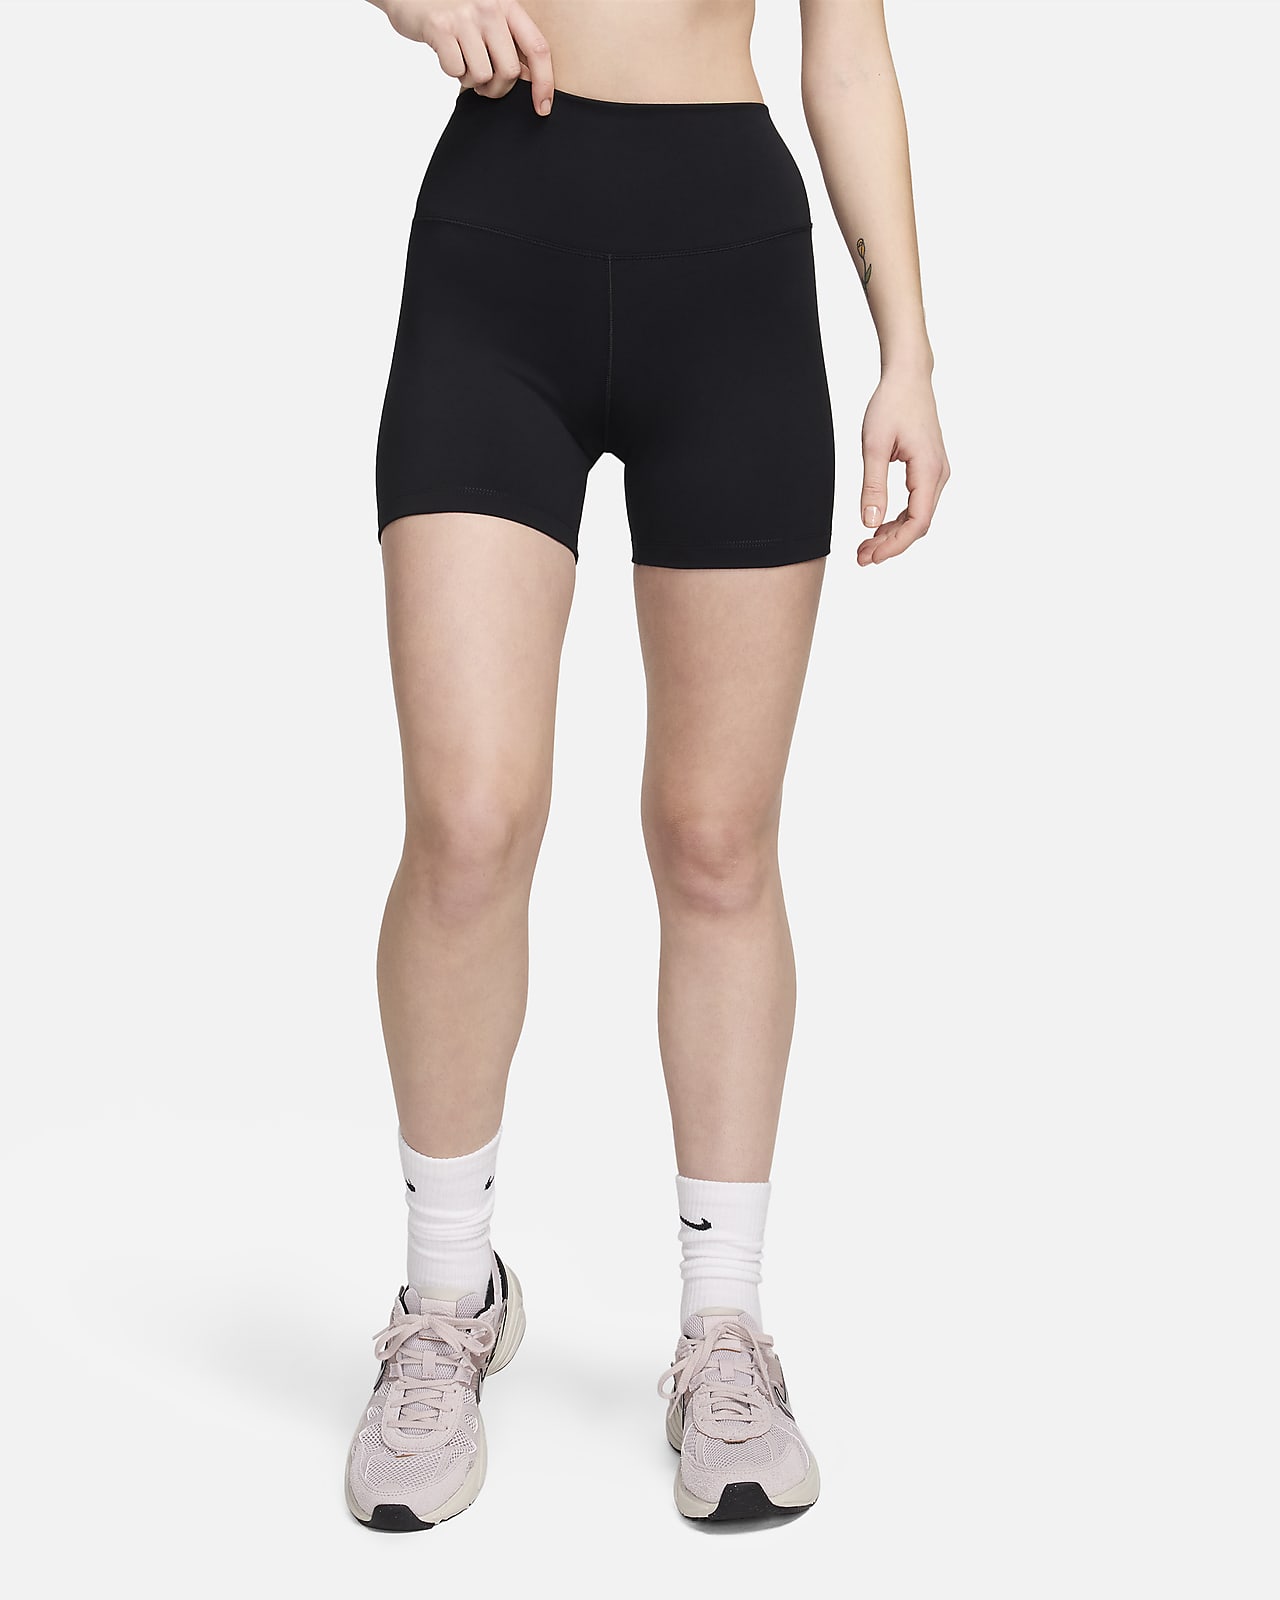 Nike One-cykelshorts med høj talje til kvinder (13 cm)